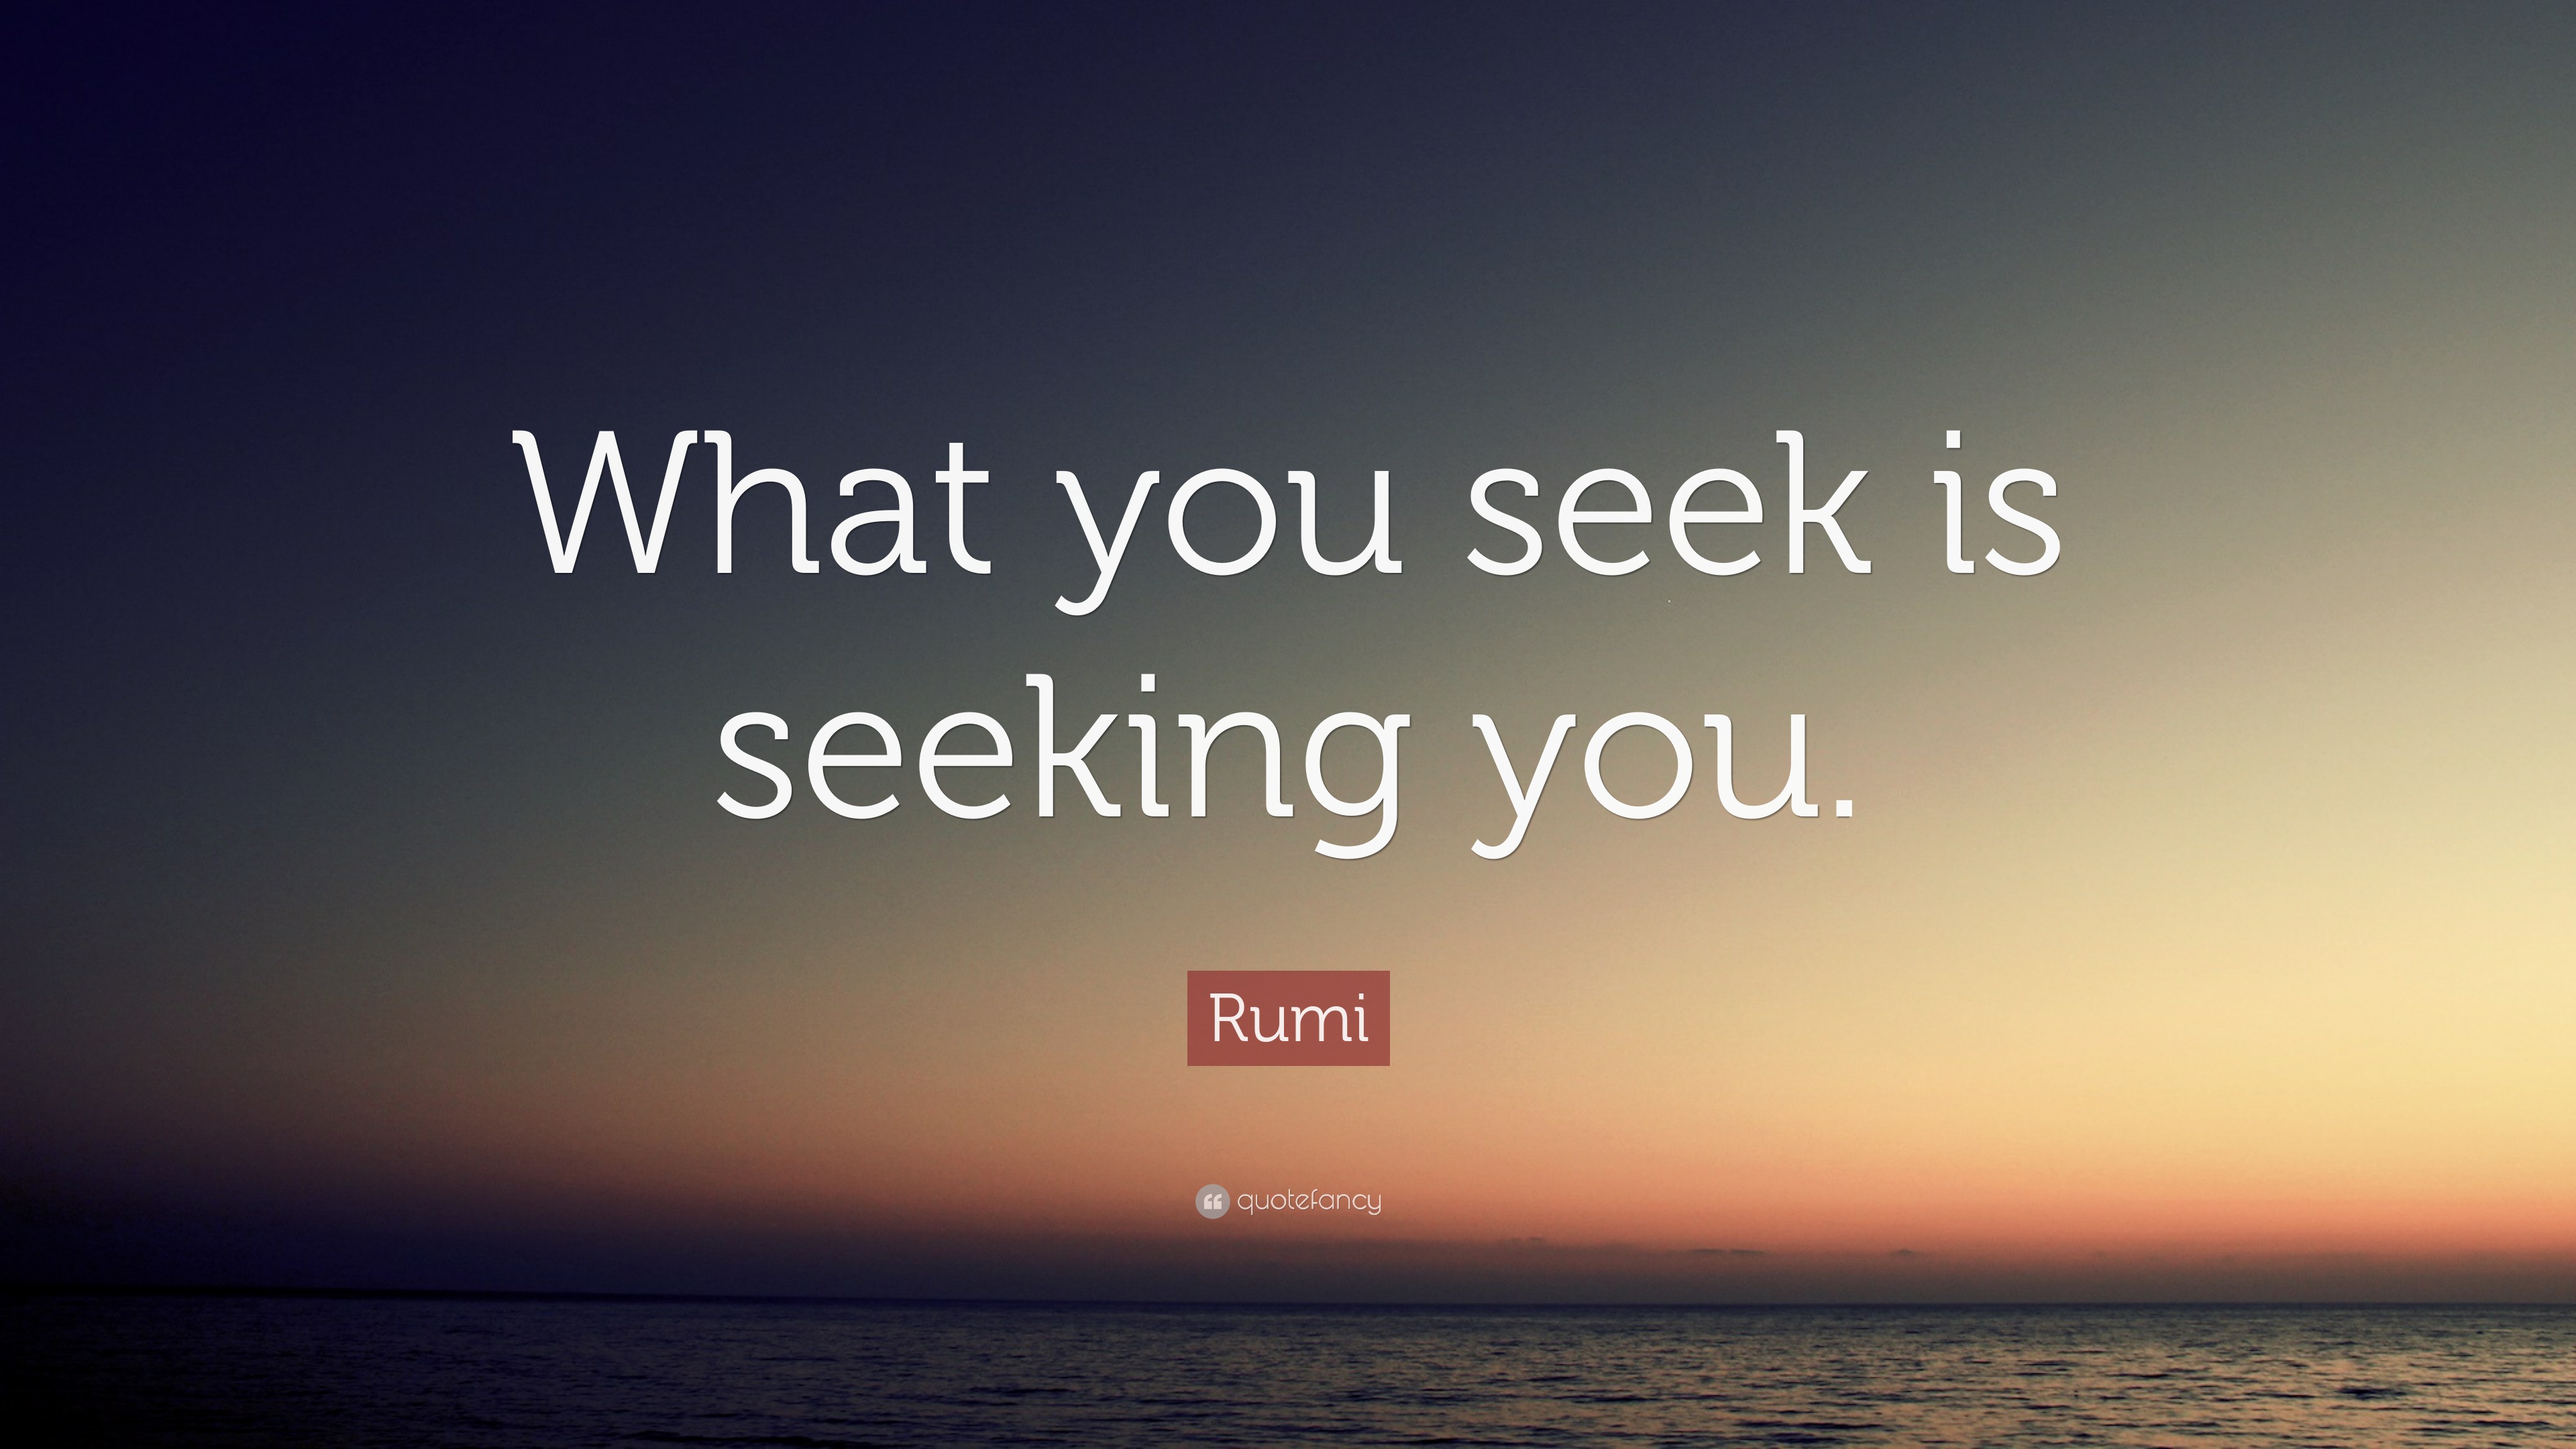 What you seek